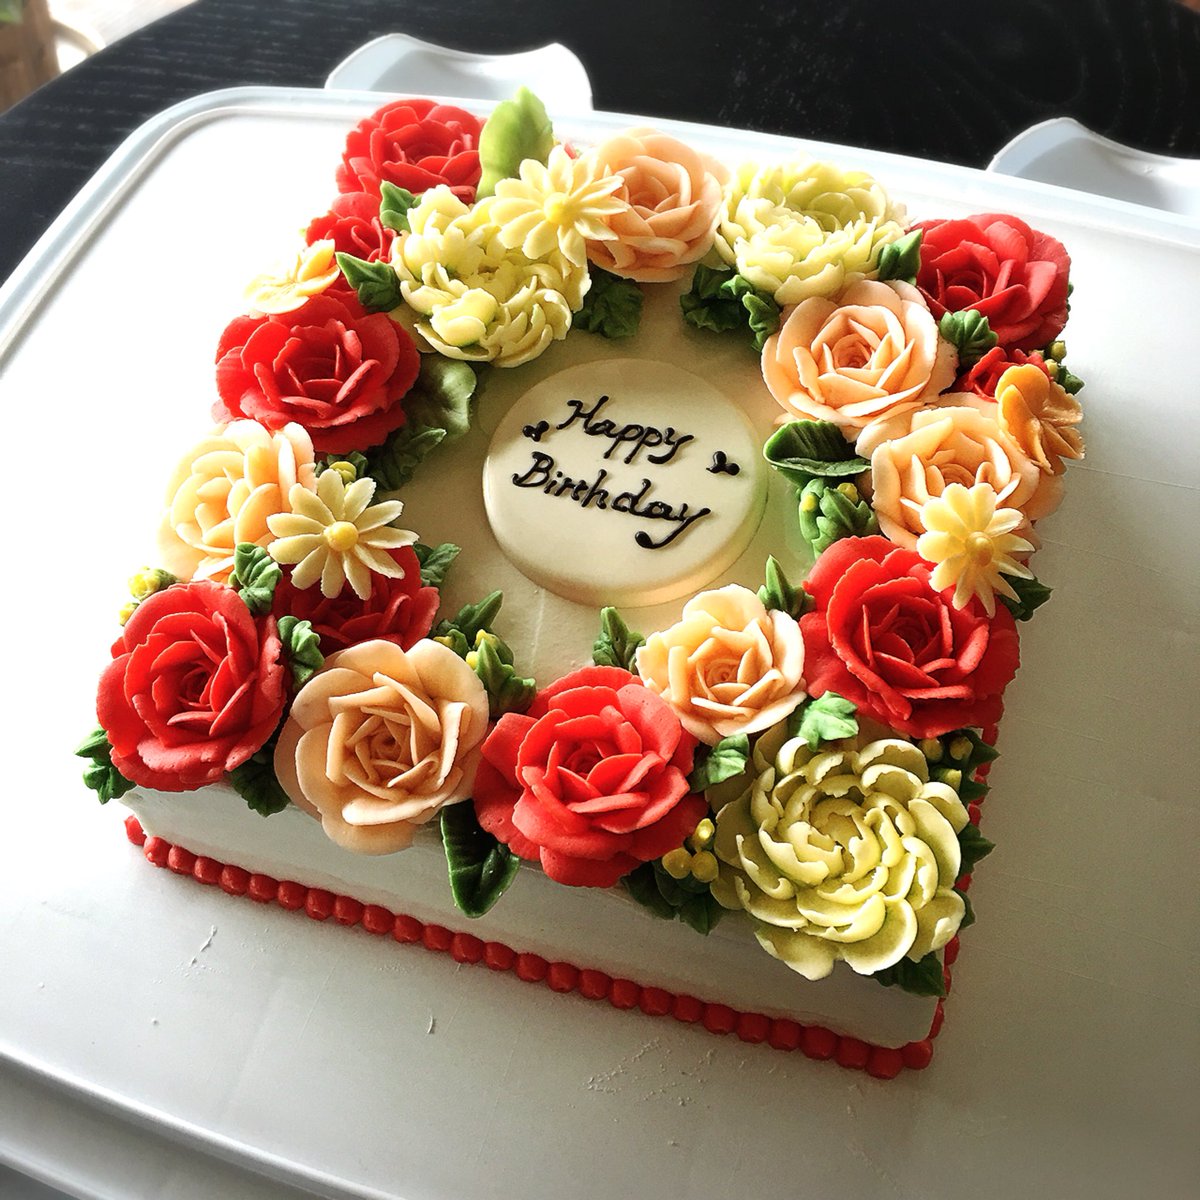 Cafe De Realite على تويتر 昨日のオーダーケーキ お母様の還暦のお祝い ご家族でお祝いされたそうです おめでとうございます 岐阜フラワーケーキ フラワーケーキ オーダーケーキ 還暦祝い